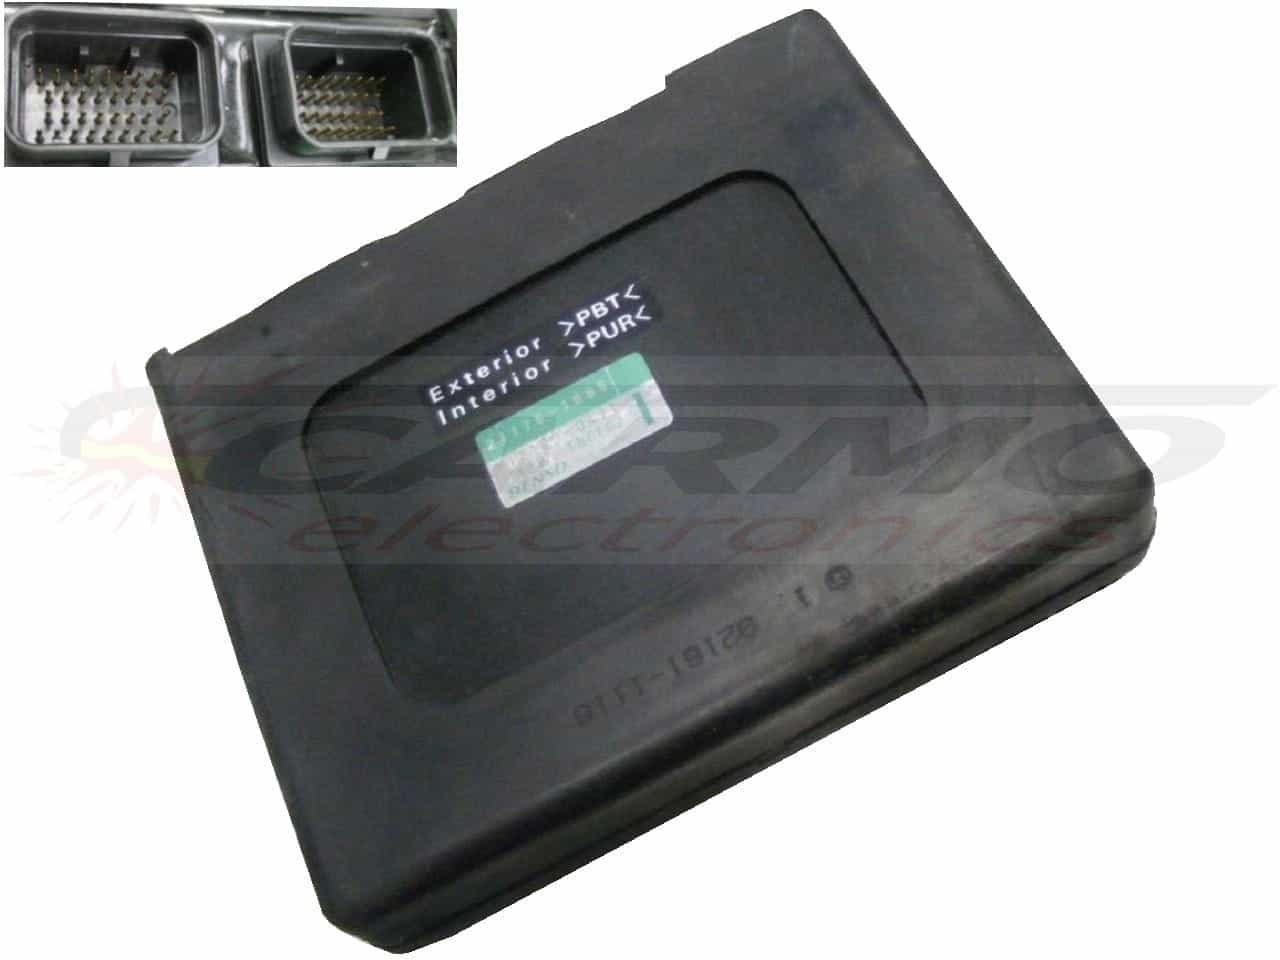 ZX12 1200 (21175-1065, 112100-0470) ECU CDI black box module